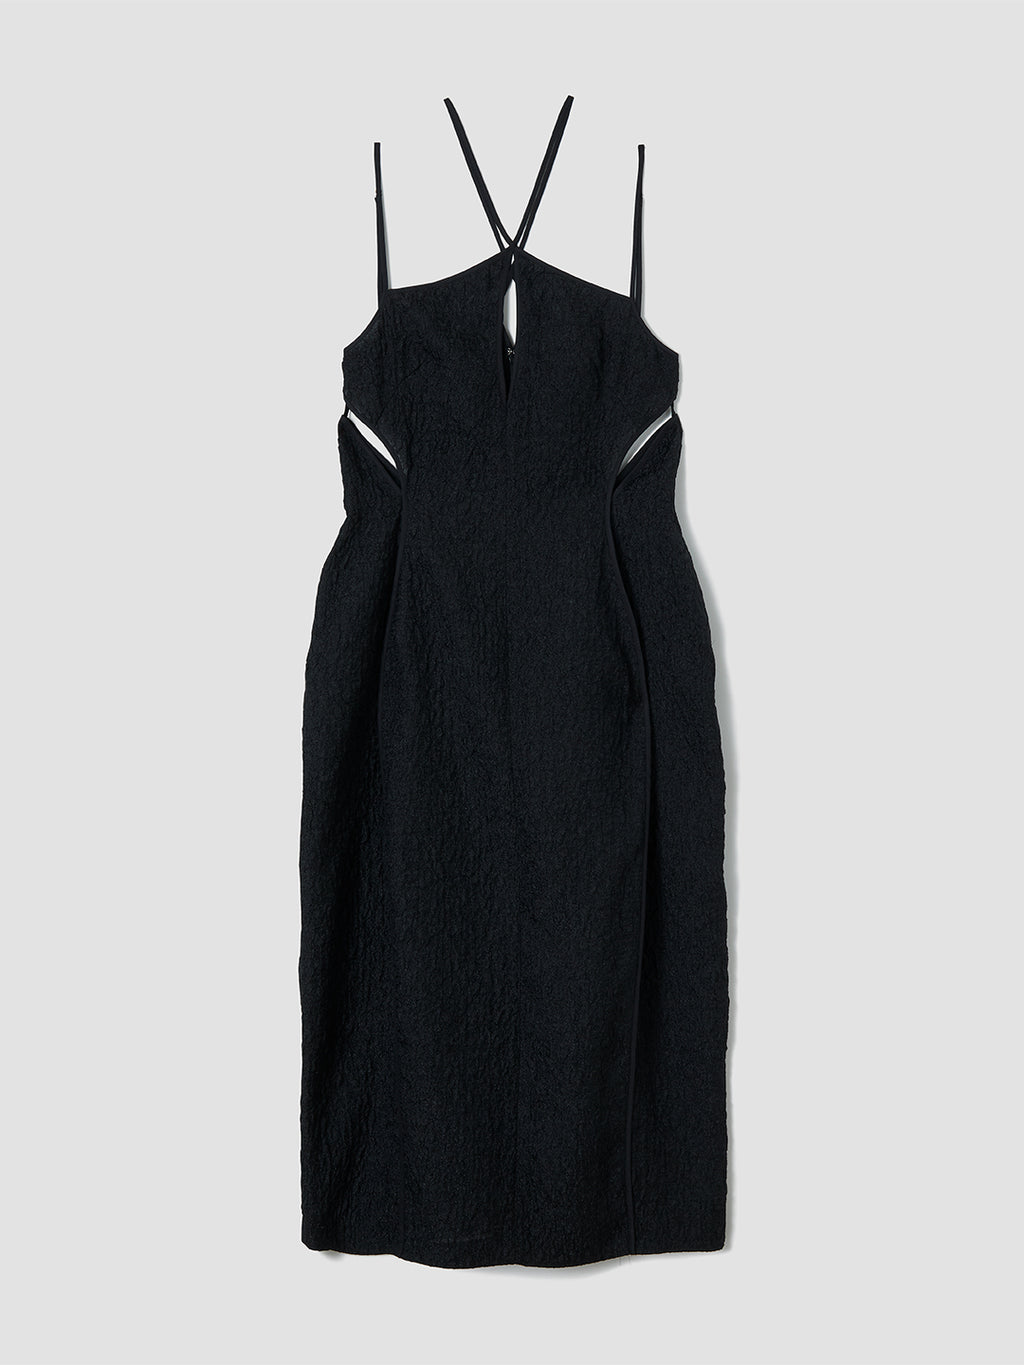 Evander Dress / Black – TELOPLAN